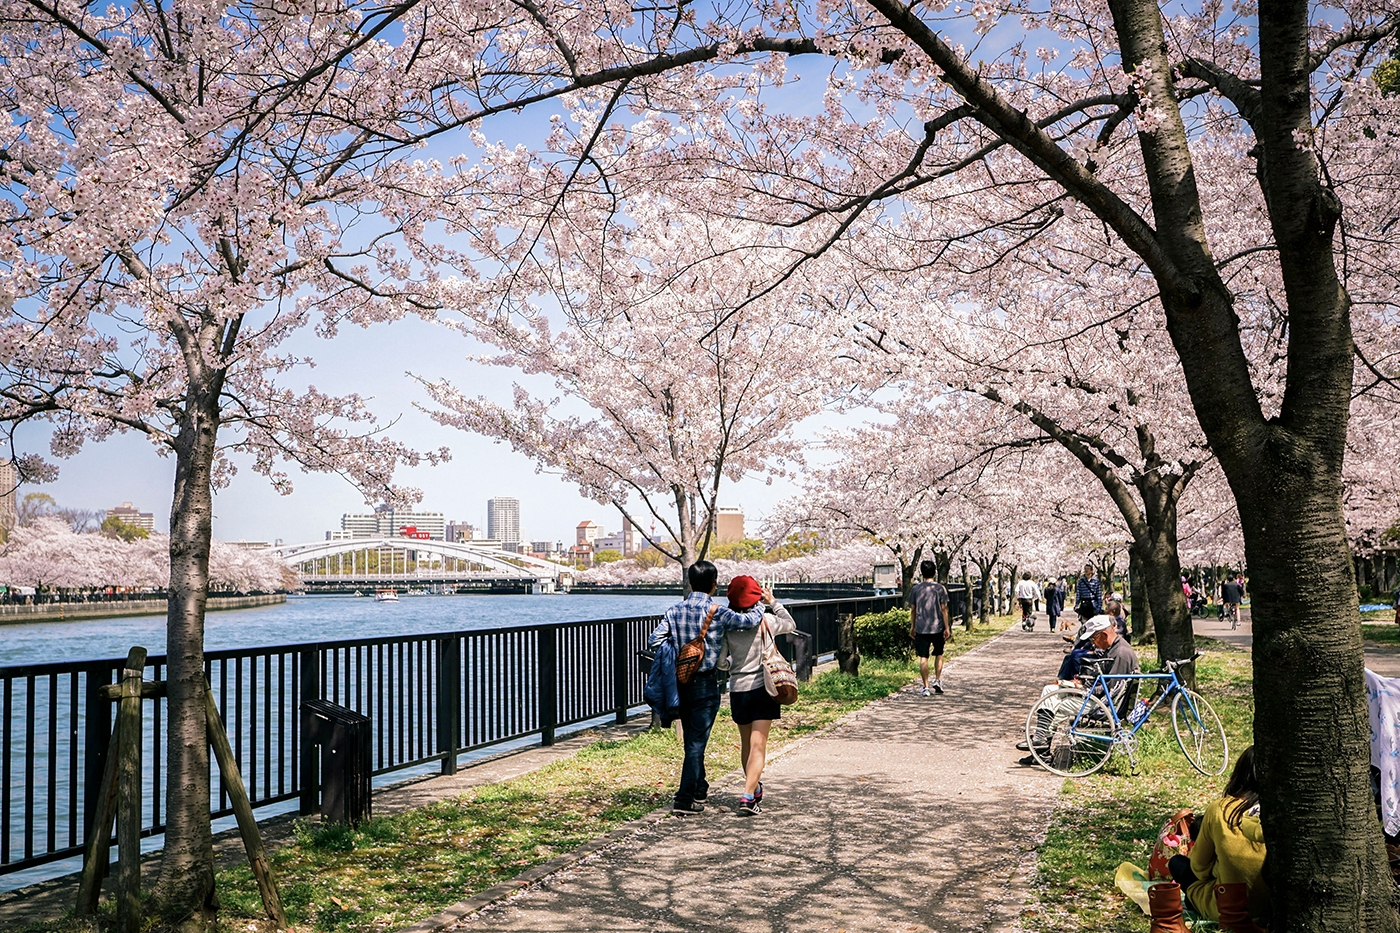 Das Flussufer wird zu einer Leinwand in Rosatönen, wenn die Kirschblüten entlang des malerischen Parks Kema Sakuranomiya blühen